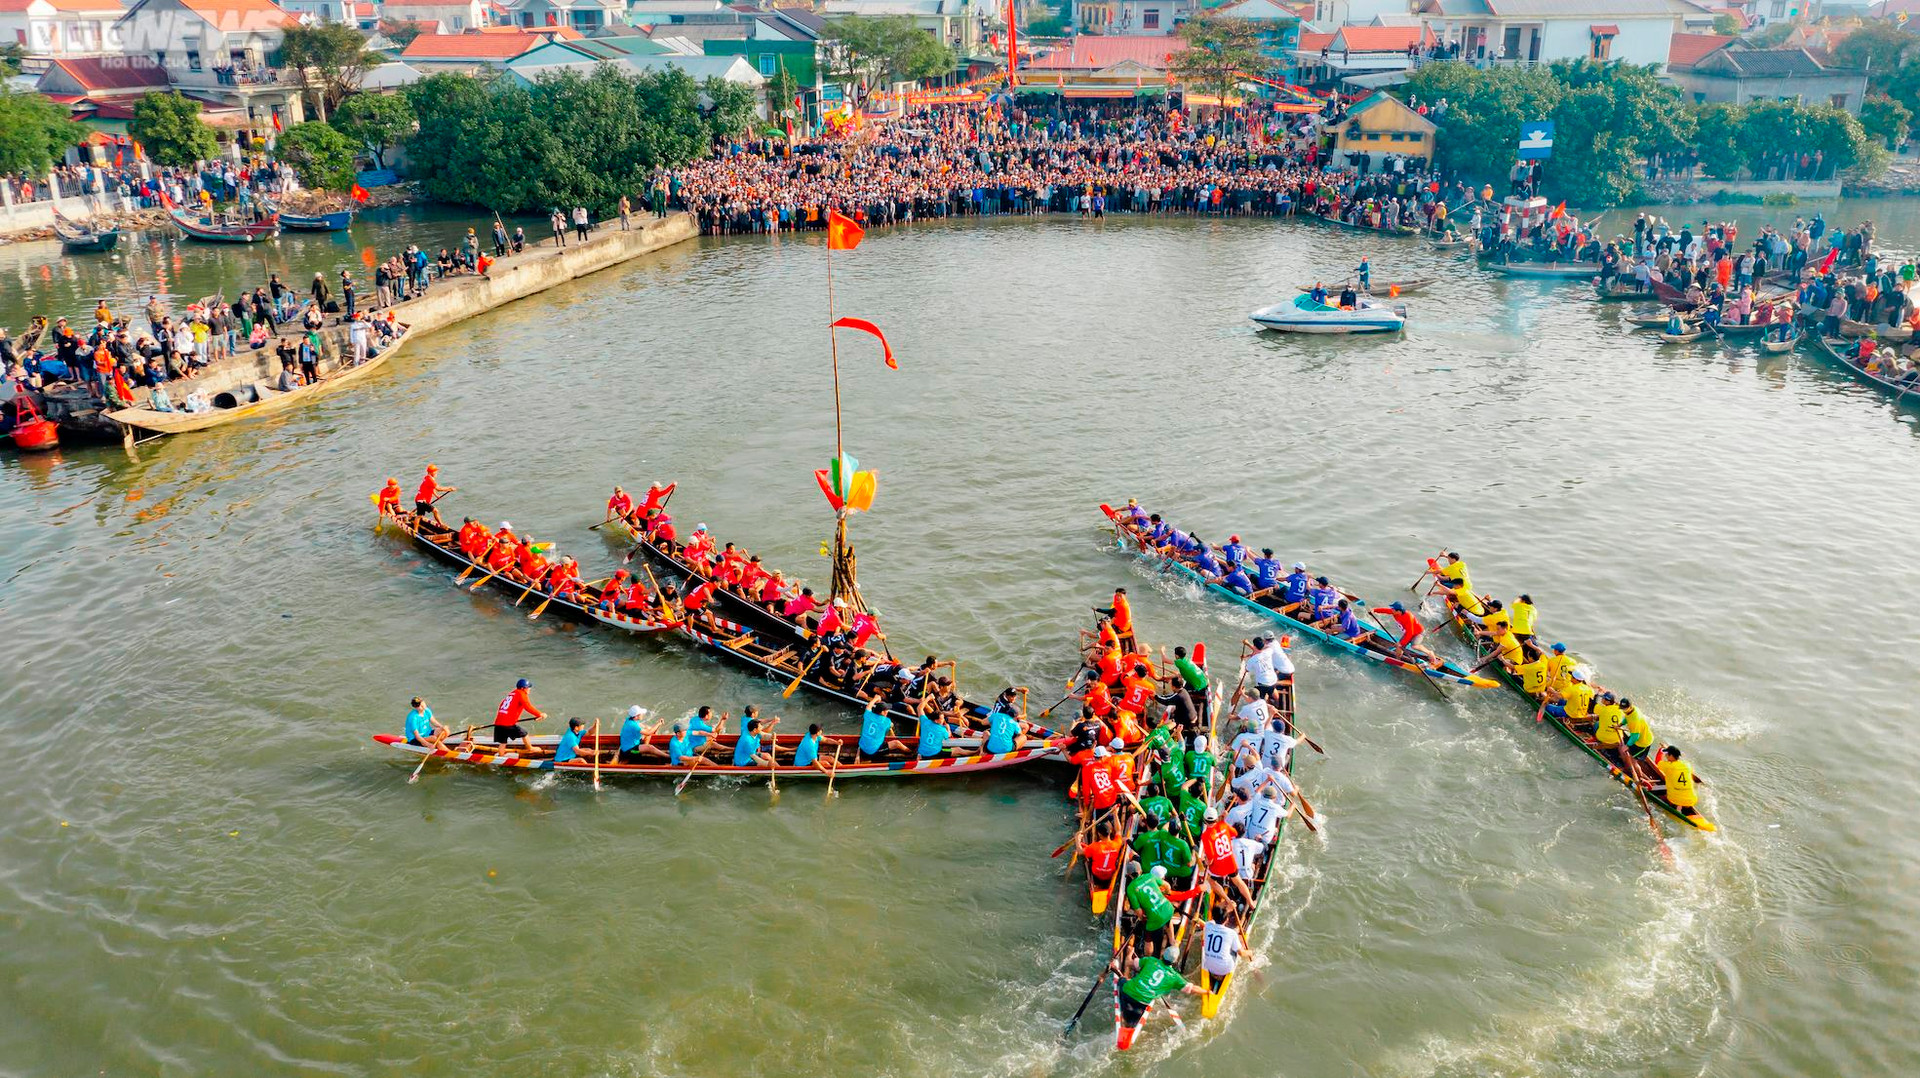 Trai tráng tranh tài đua thuyền ở lễ hội Cầu ngư lâu đời nhất cố đô Huế - 5